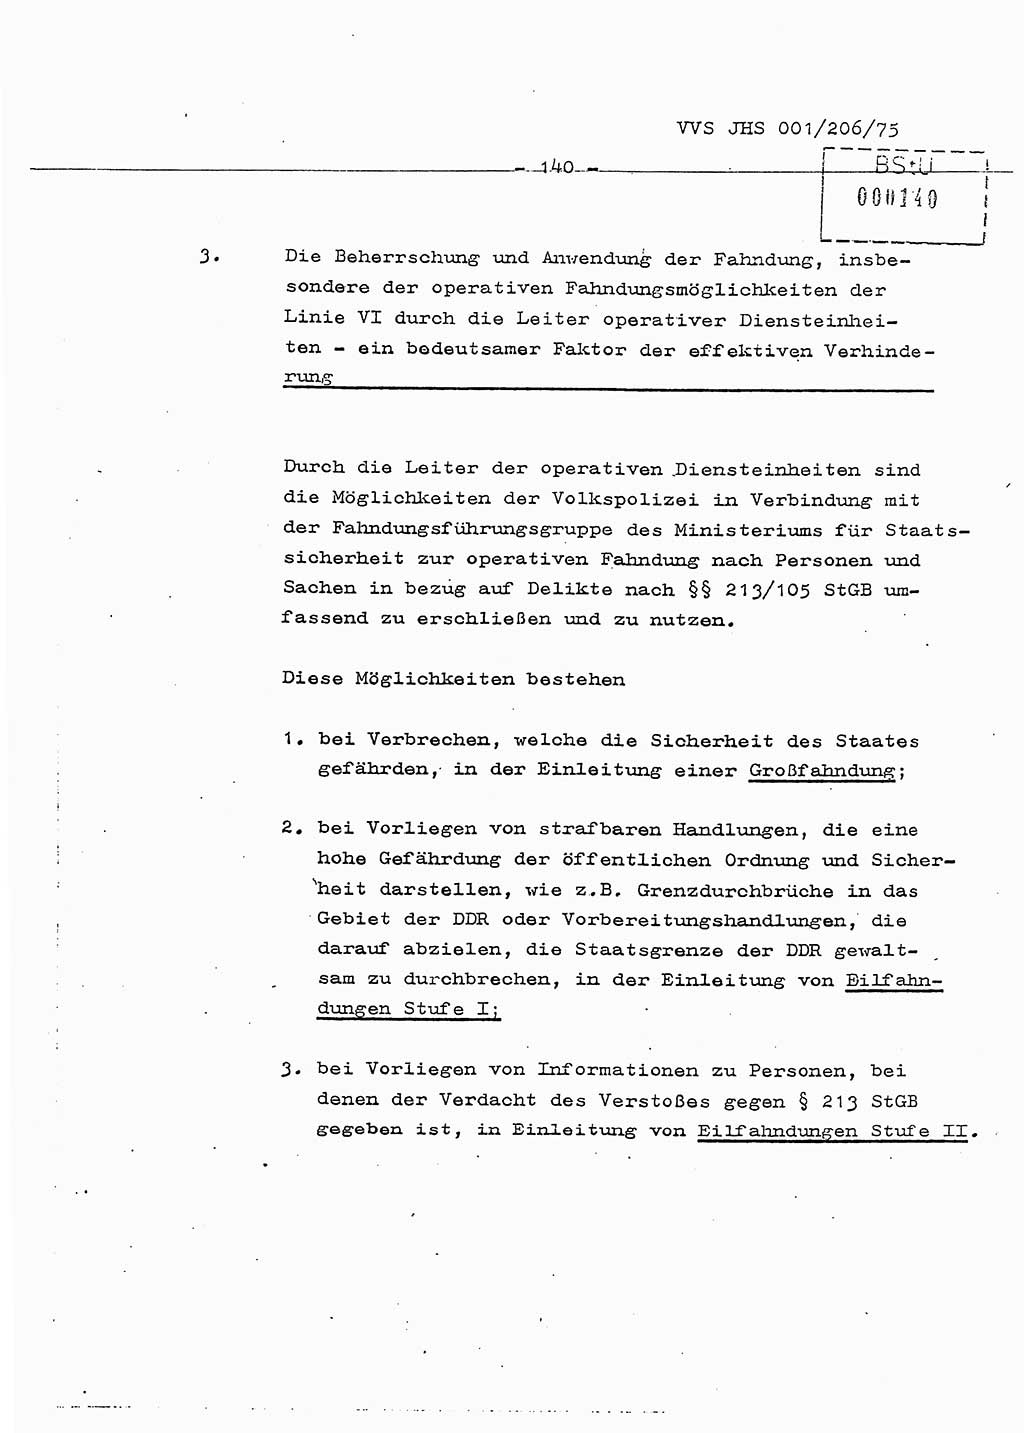 Dissertation Generalmajor Manfred Hummitzsch (Leiter der BV Leipzig), Generalmajor Heinz Fiedler (HA Ⅵ), Oberst Rolf Fister (HA Ⅸ), Ministerium für Staatssicherheit (MfS) [Deutsche Demokratische Republik (DDR)], Juristische Hochschule (JHS), Vertrauliche Verschlußsache (VVS) 001-206/75, Potsdam 1975, Seite 140 (Diss. MfS DDR JHS VVS 001-206/75 1975, S. 140)